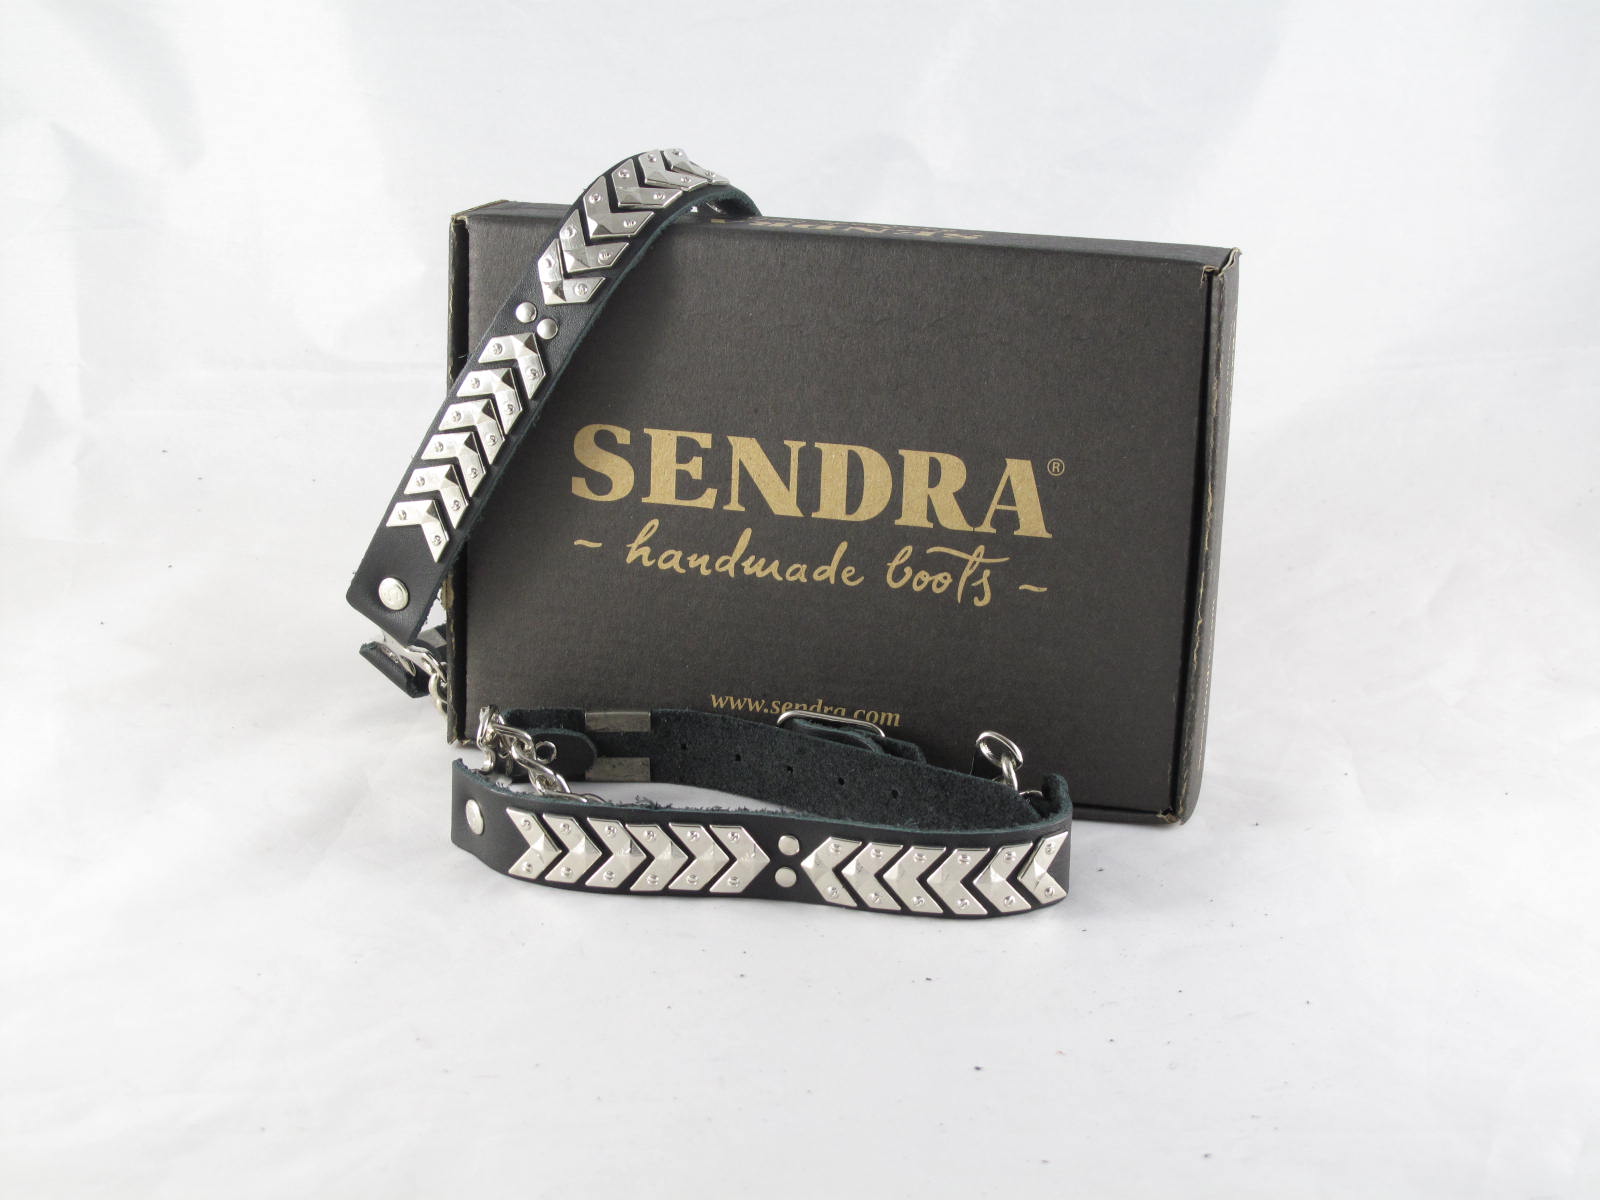 Sendra spores - black with silver arrows